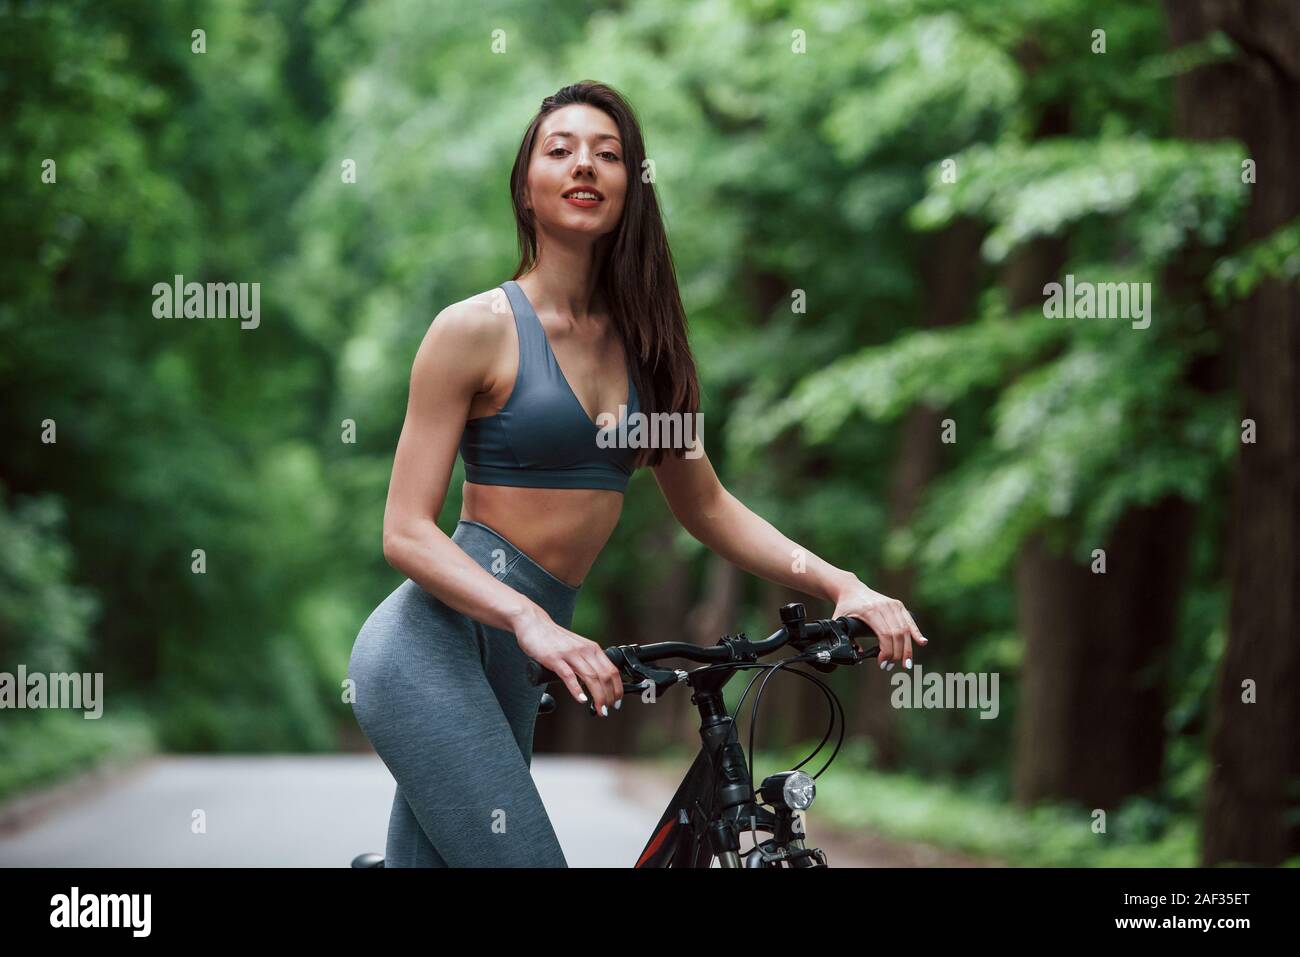 Des émotions positives. Cycliste Femme debout avec vélo sur route asphaltée dans la forêt dans la journée Banque D'Images